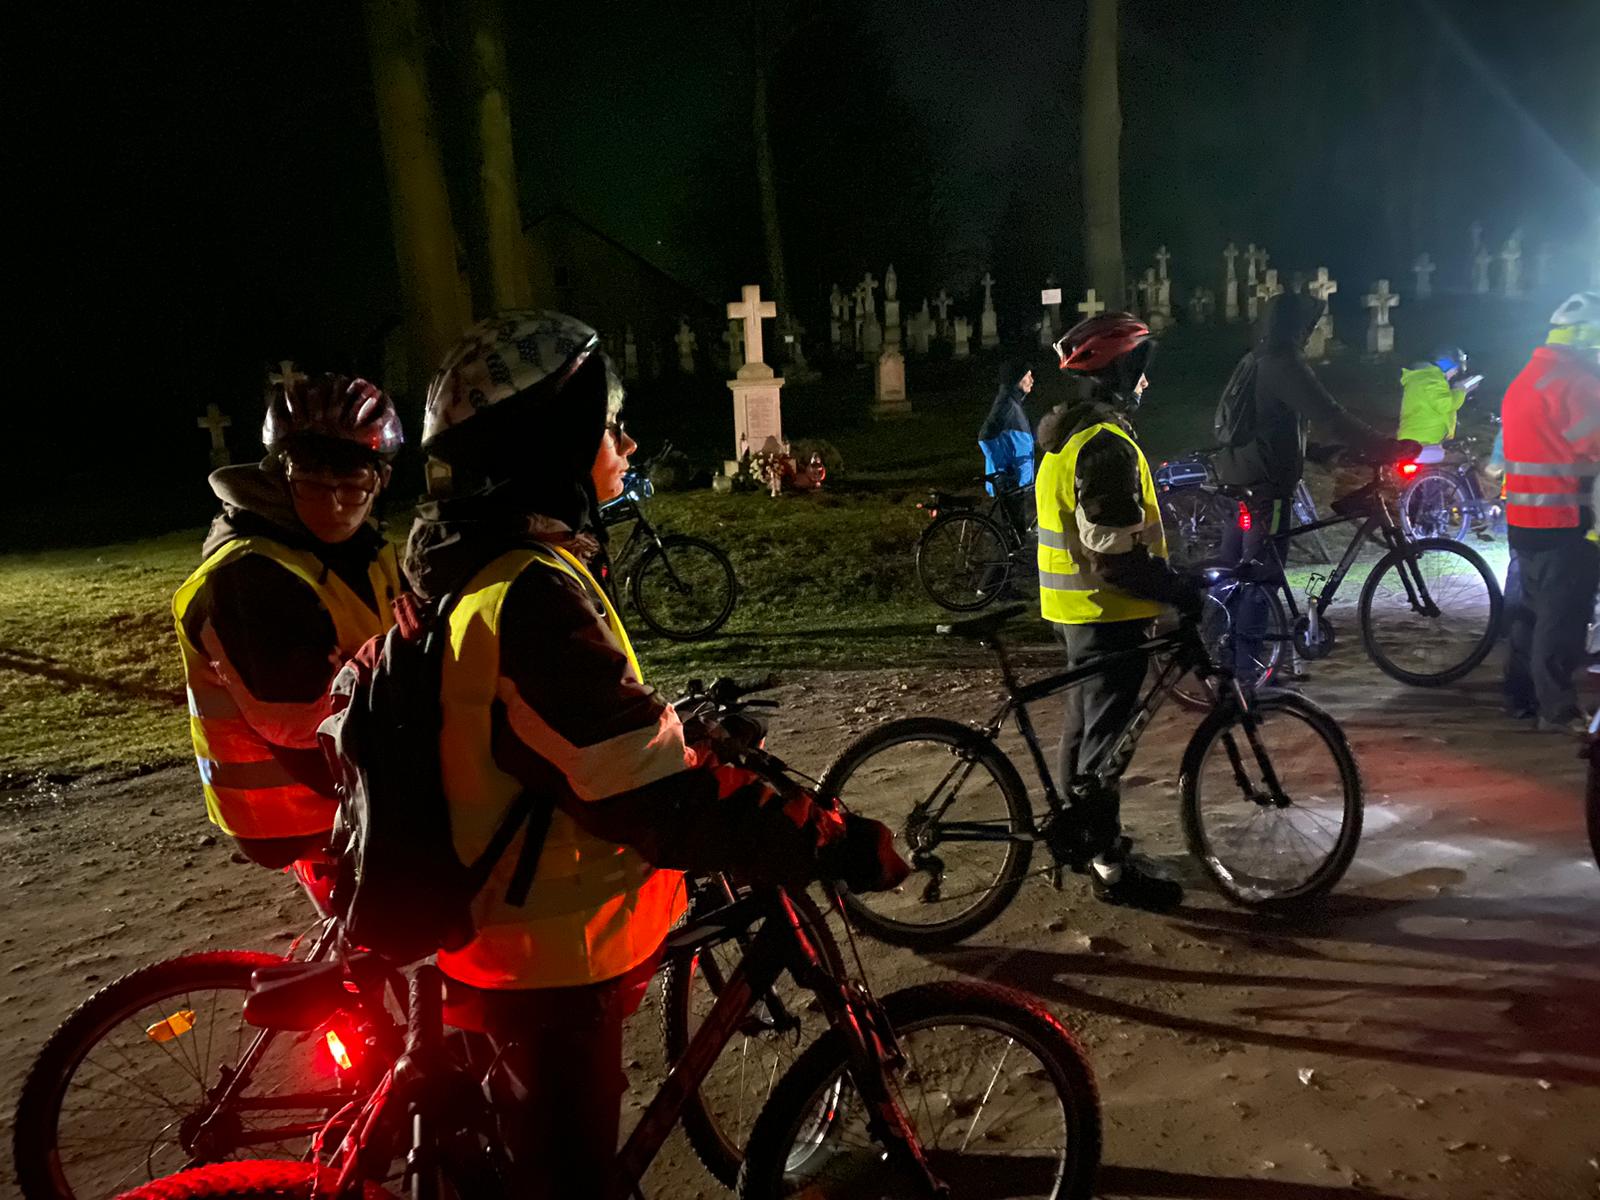 Rowerowa Droga Krzyżowa | Kilku wychowanków MOW stoi bokiem przy swoich rowerach. W tle widoczne kamienne krzyże nagrobków i pnie drzew. Zdjęcie nocne.jpg